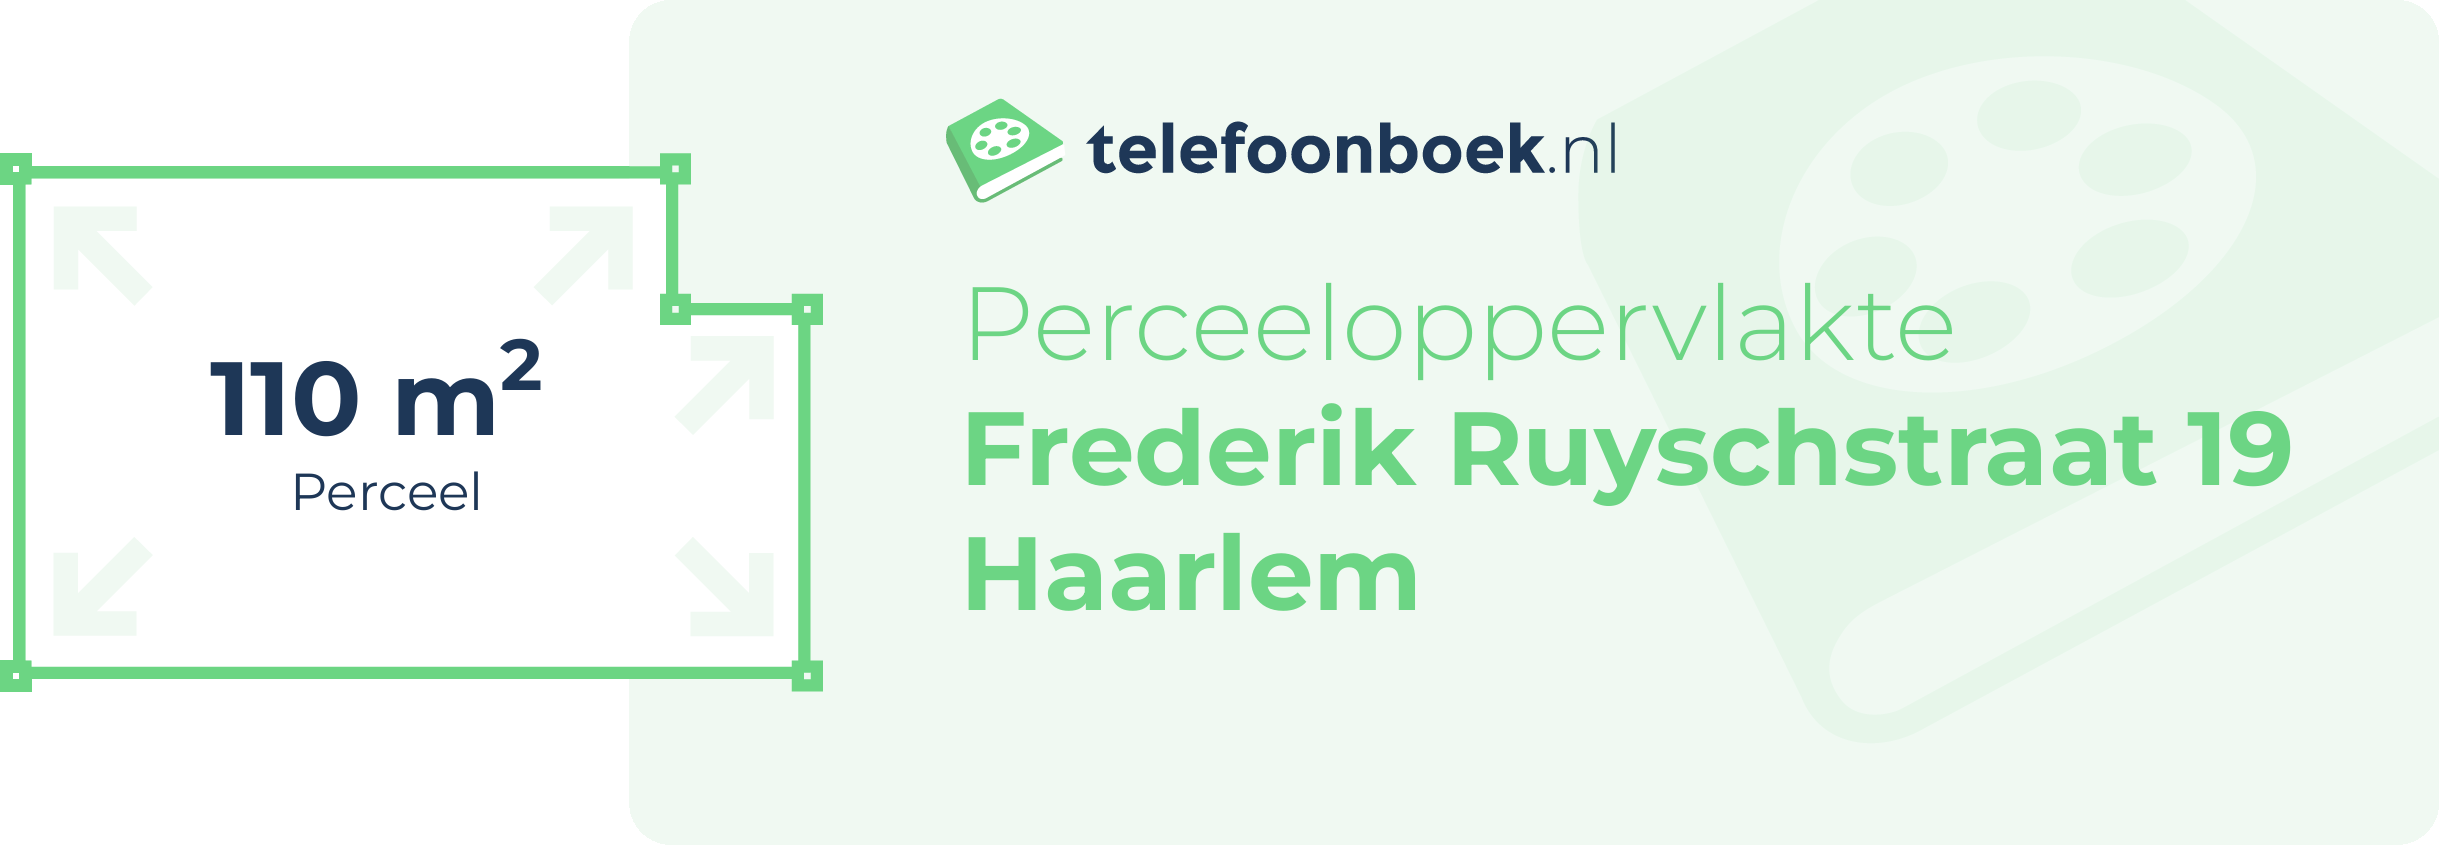 Perceeloppervlakte Frederik Ruyschstraat 19 Haarlem